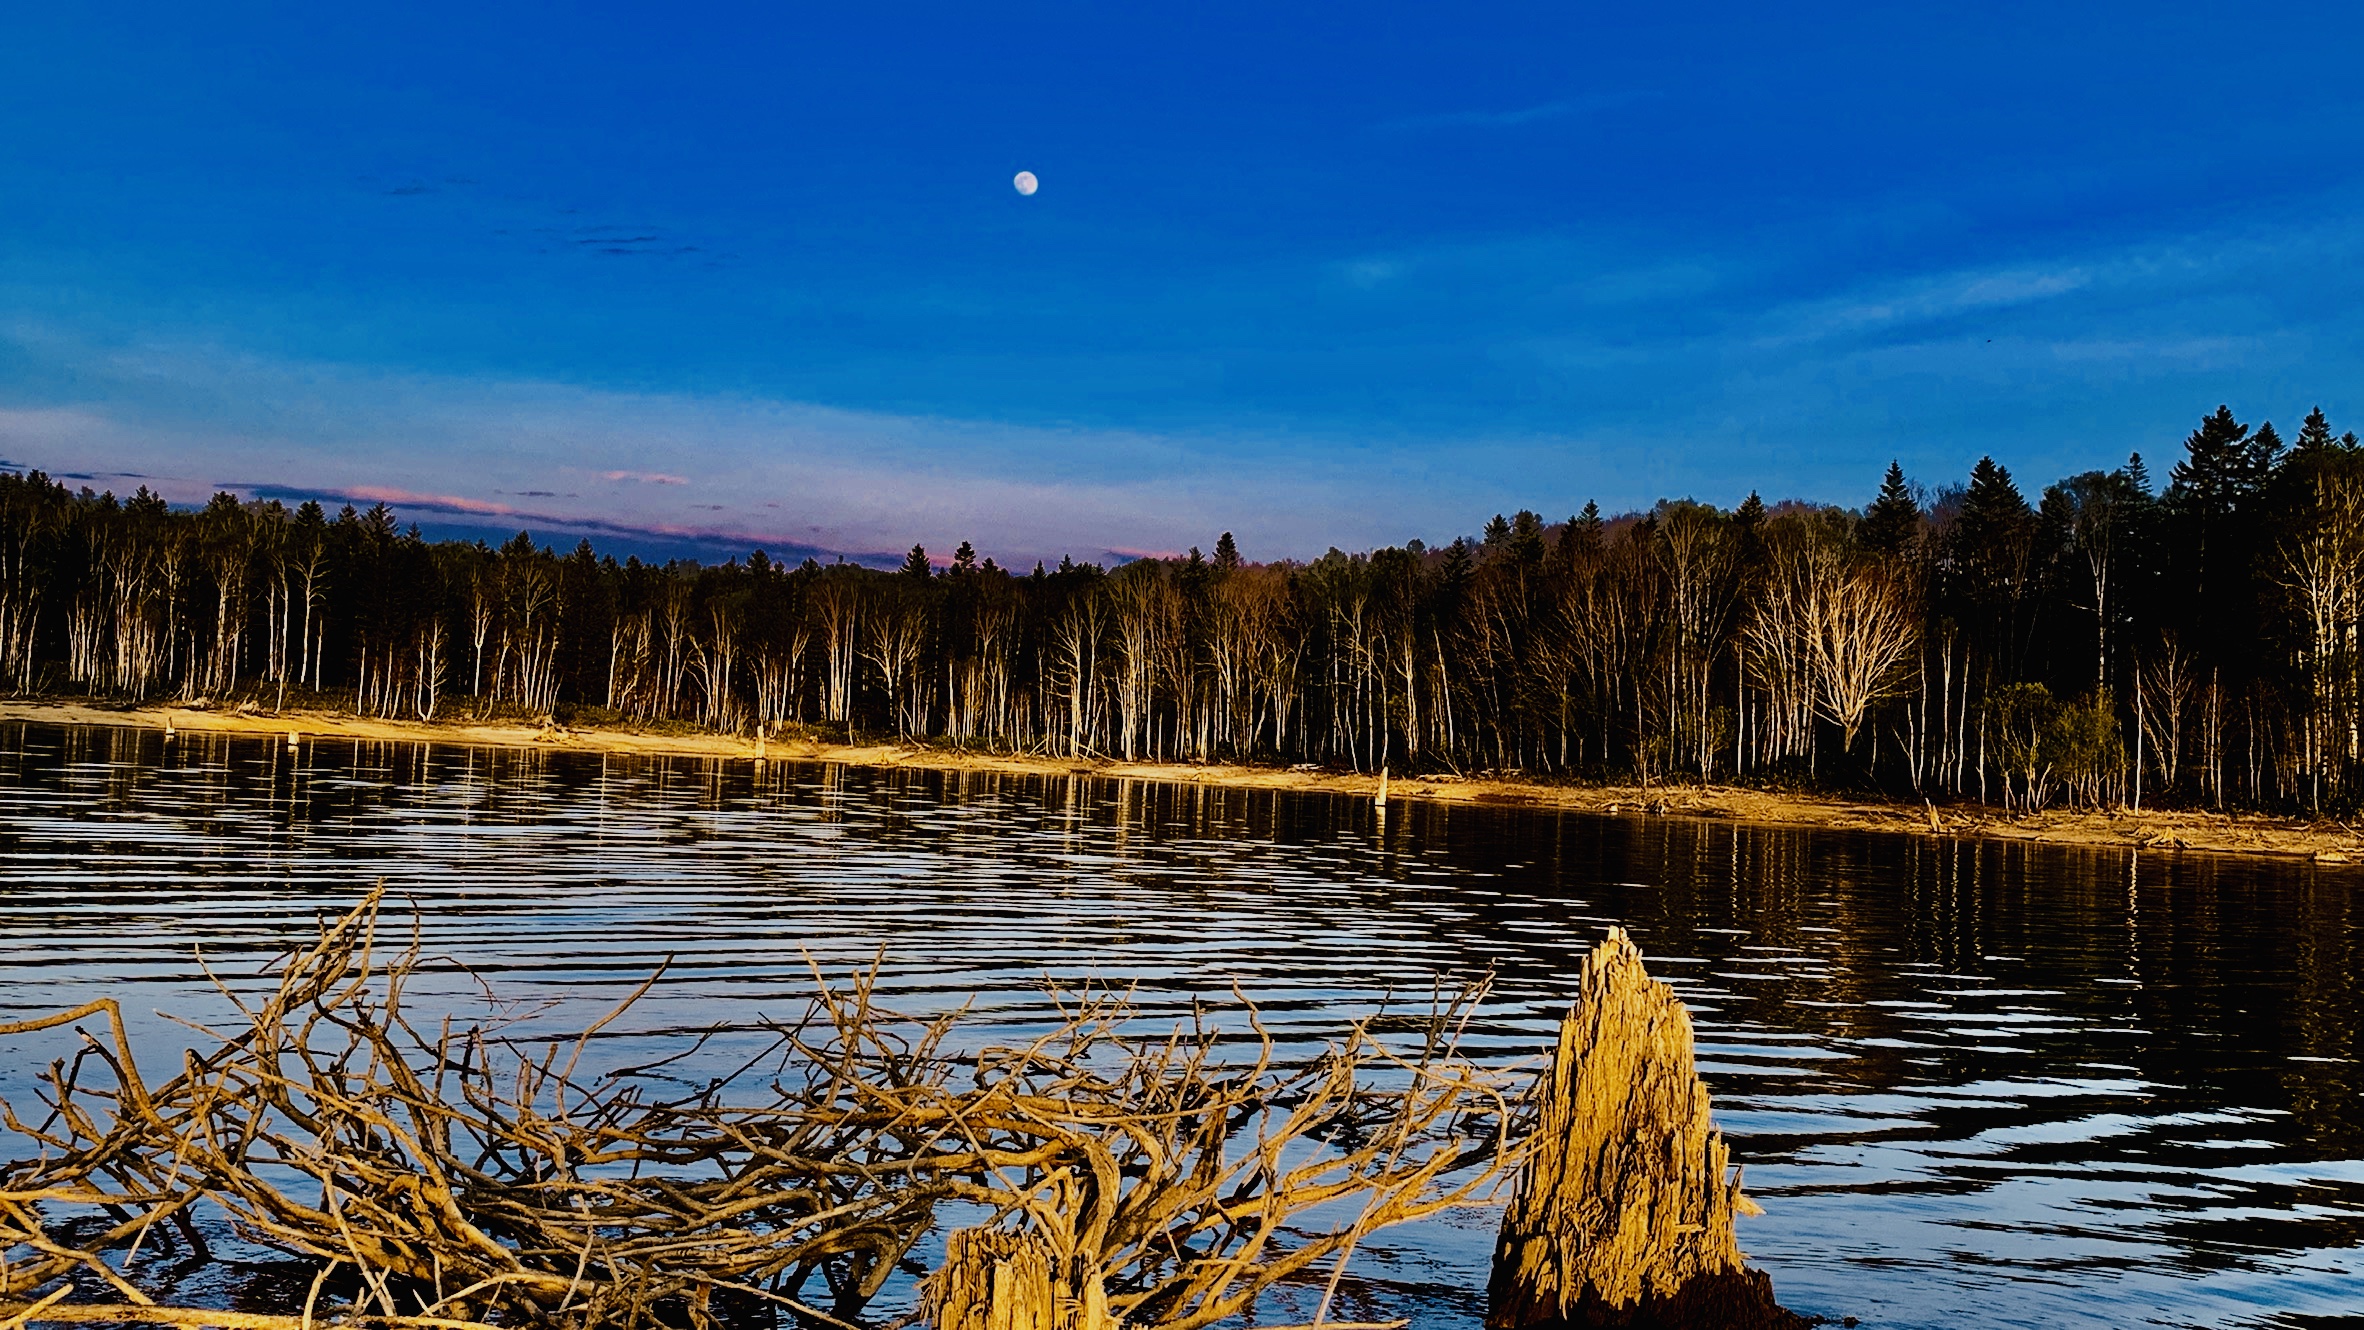 月が昇る朱鞠内湖の夕暮れ